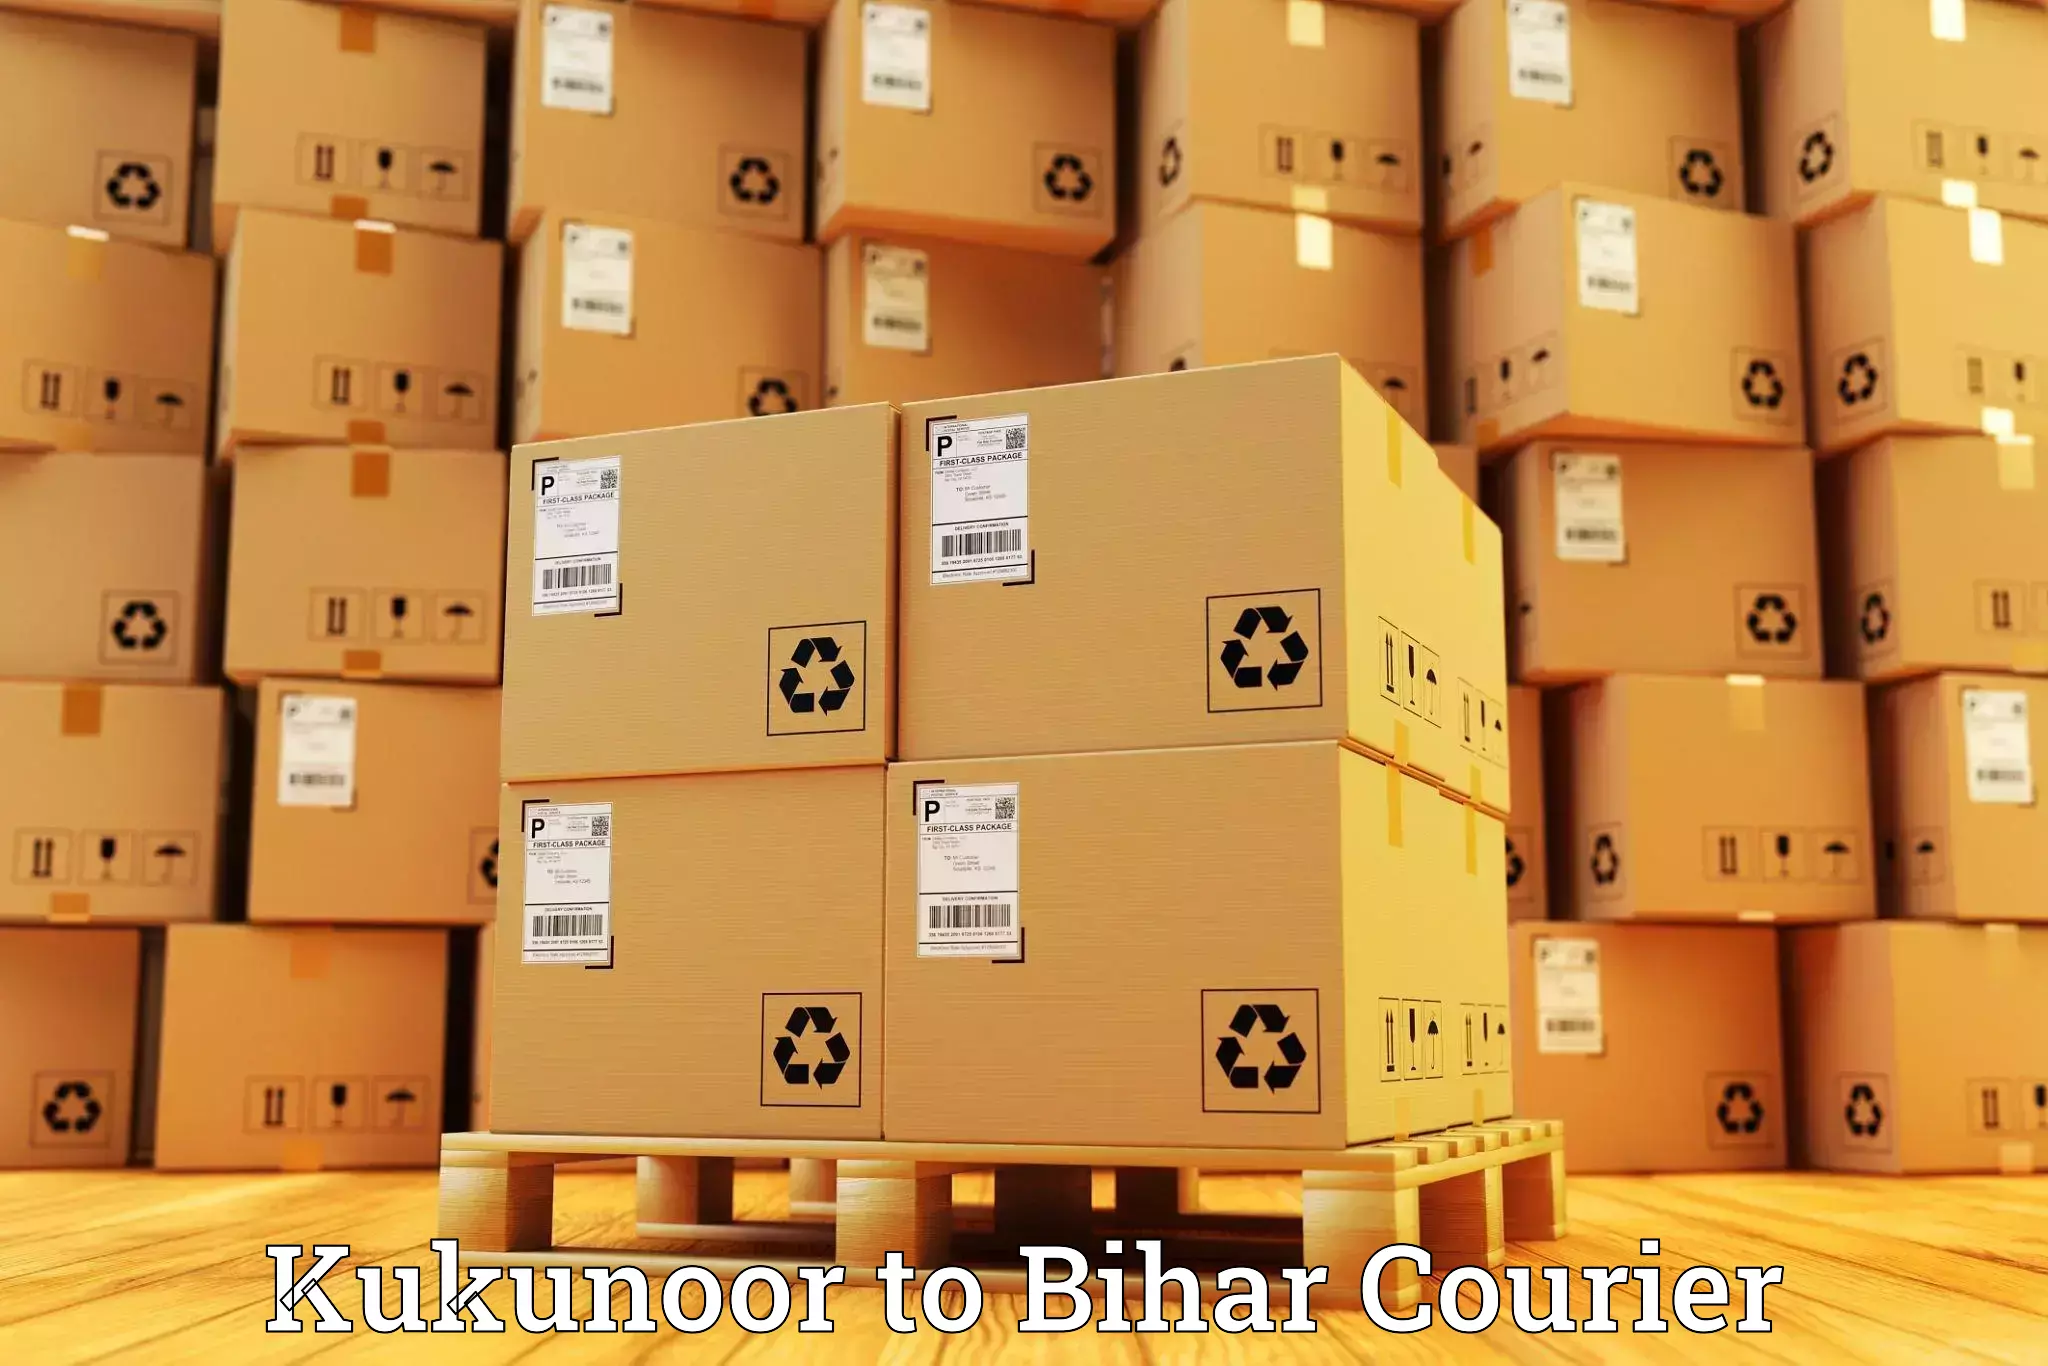 Dynamic courier operations Kukunoor to Bihar